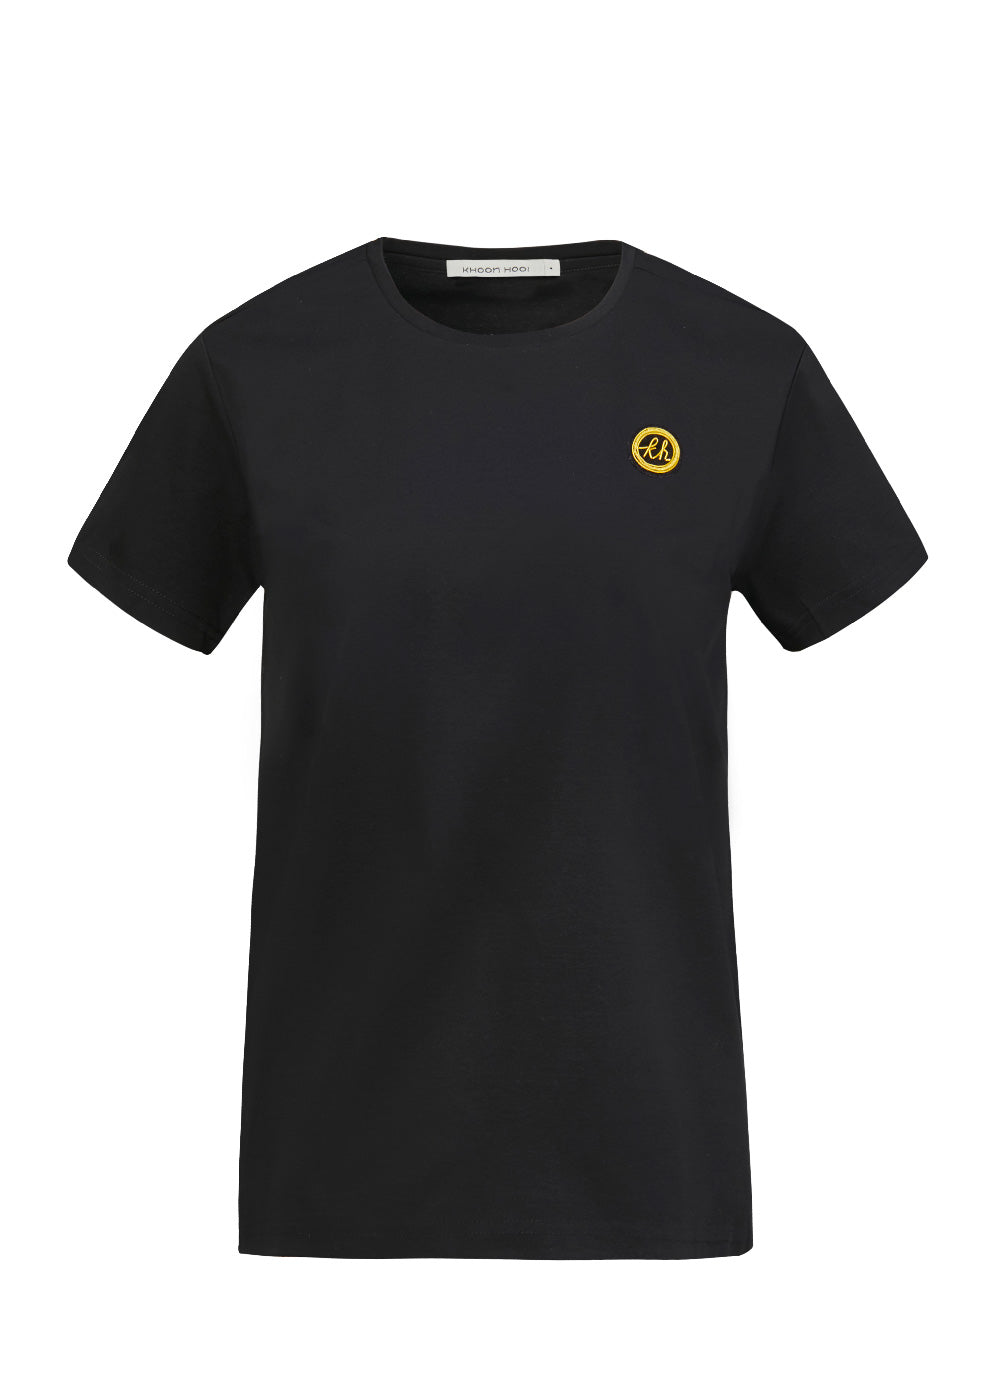 Dean T Shirt in Logo Noir